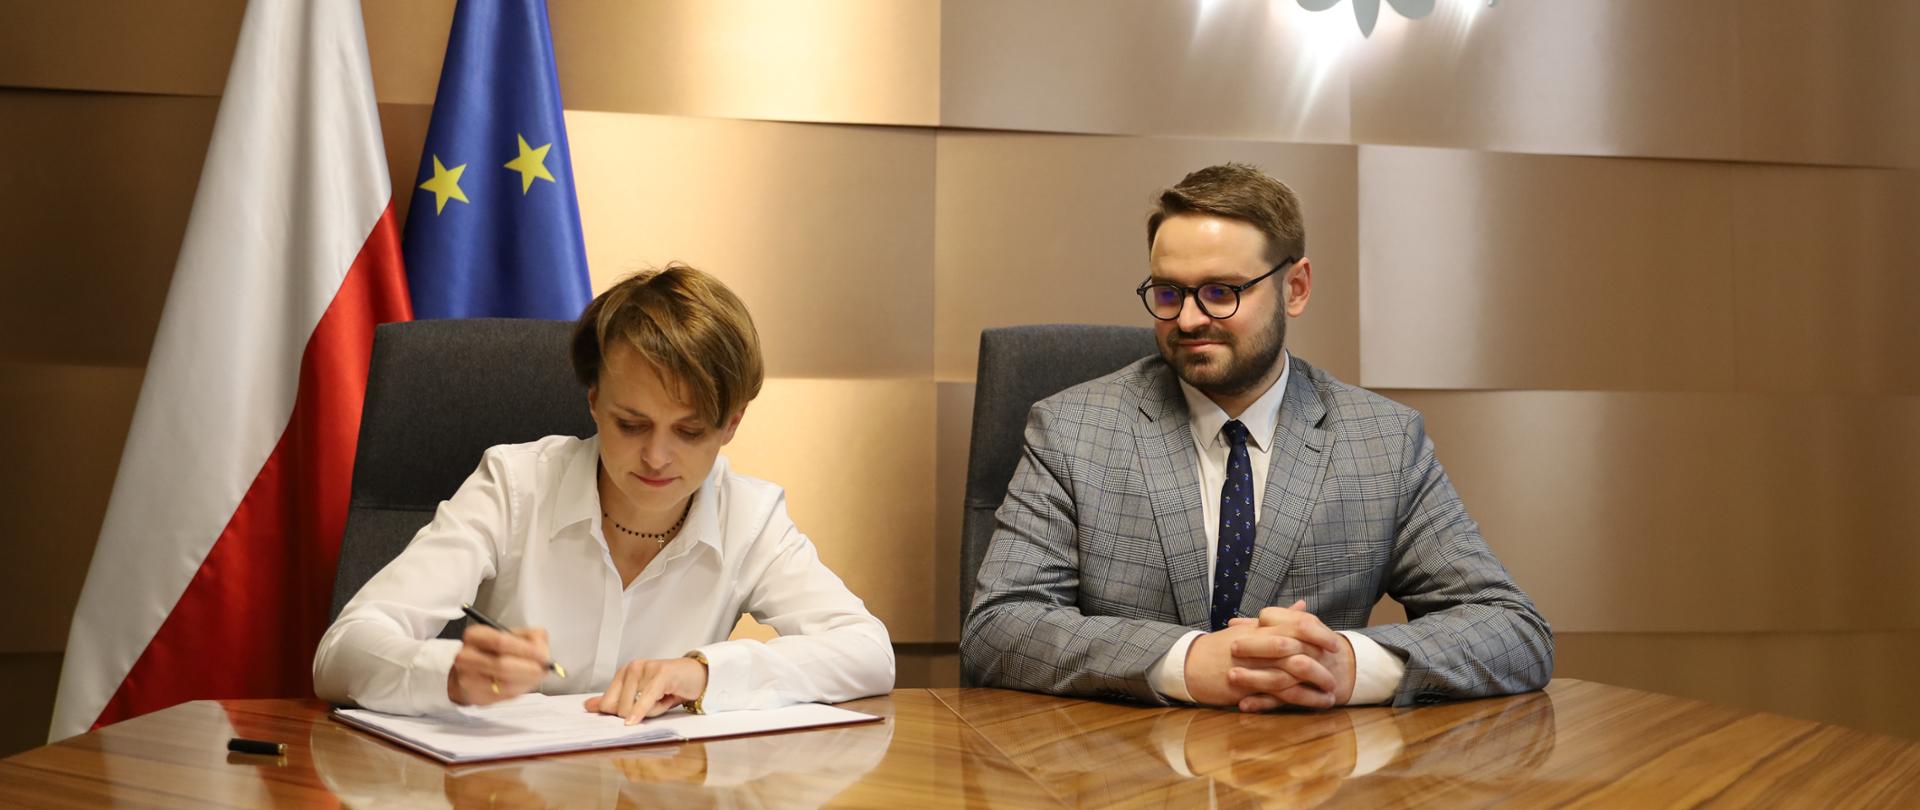 Jadwiga Emilewicz podpisuje porozumienie Stop Smog, obok siedzi Bartłomiej Orzeł.